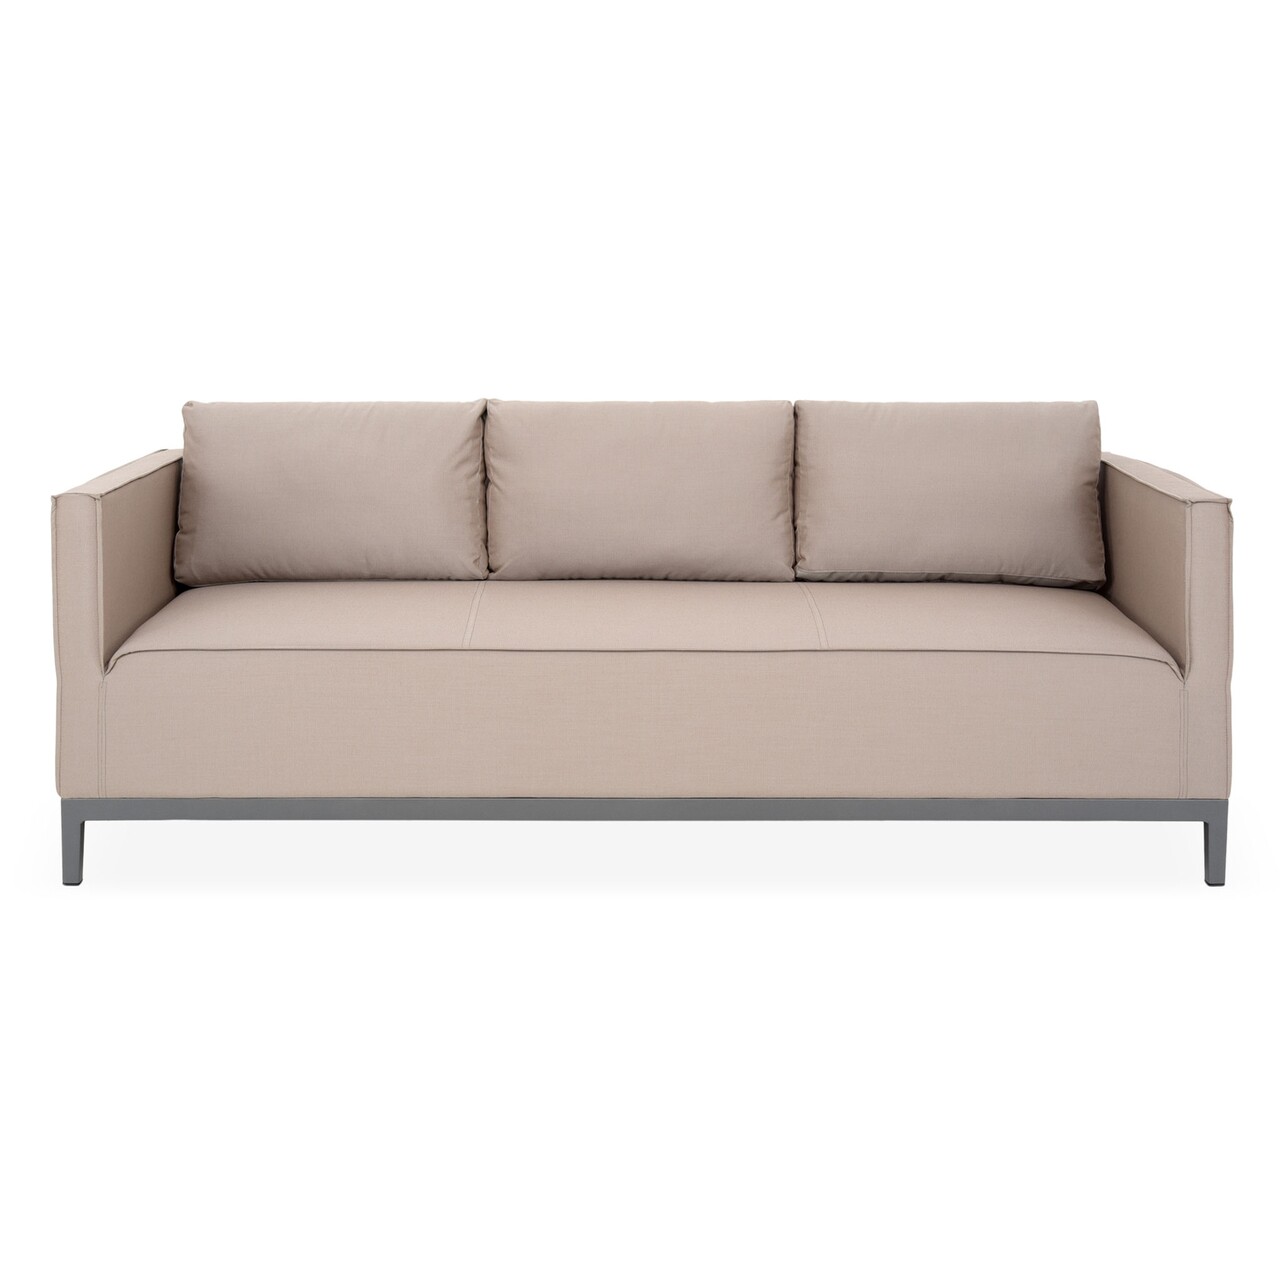 Maison eon háromszemélyes kanapé, l.204 l.85 h.67 cm, alumínium, szürke